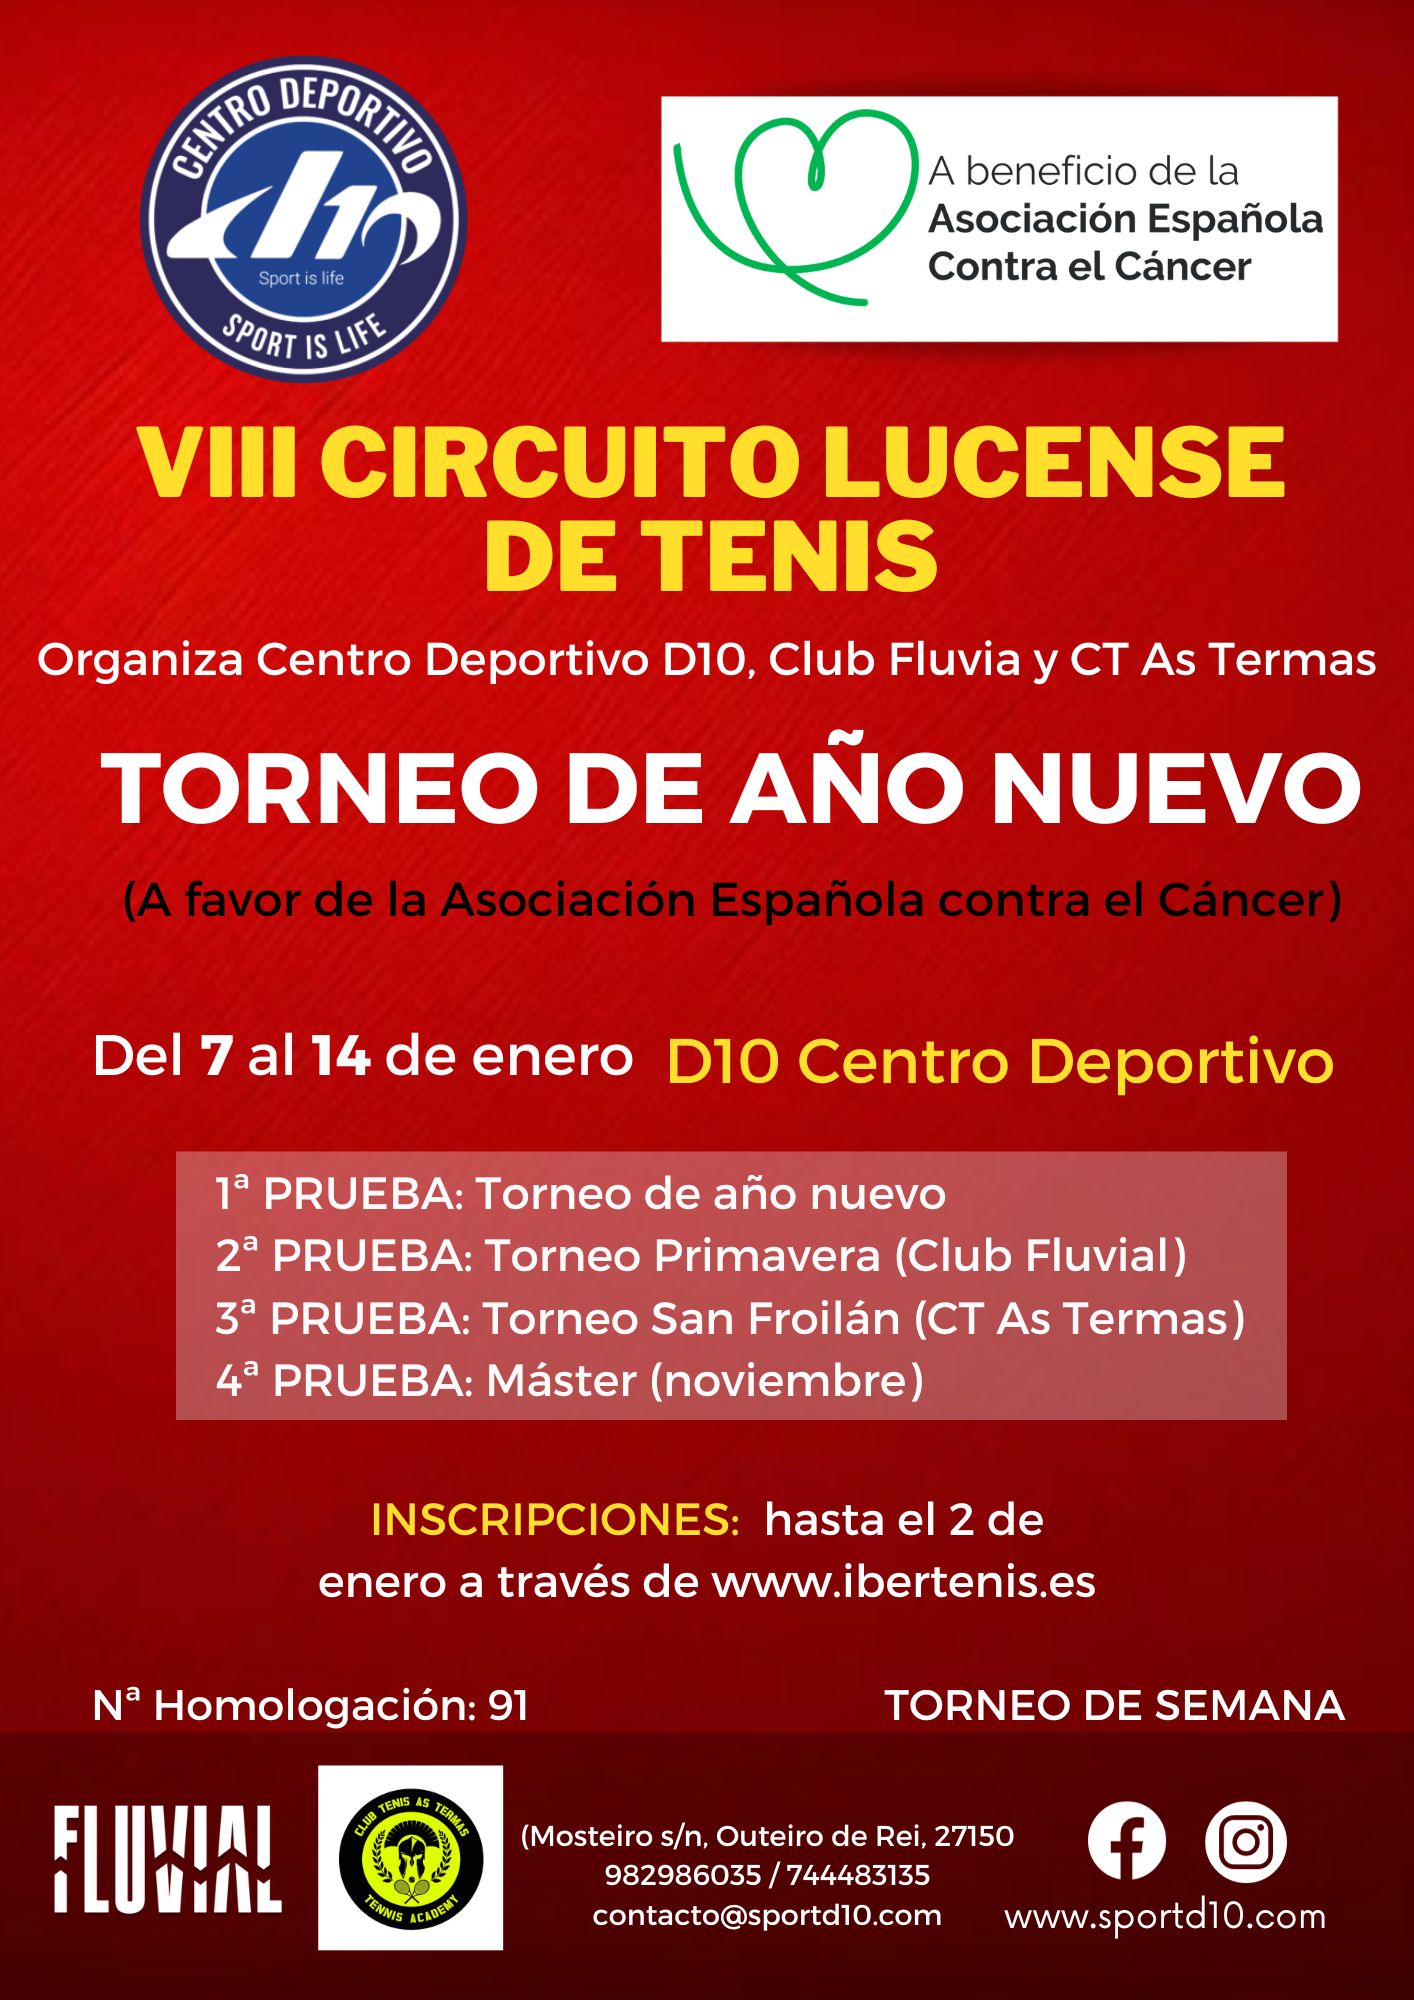 Cartel del TORNEO DE AÑO NUEVO - VIII CIRCUITO LUCENSE DE TENIS (a favor de la AECC)